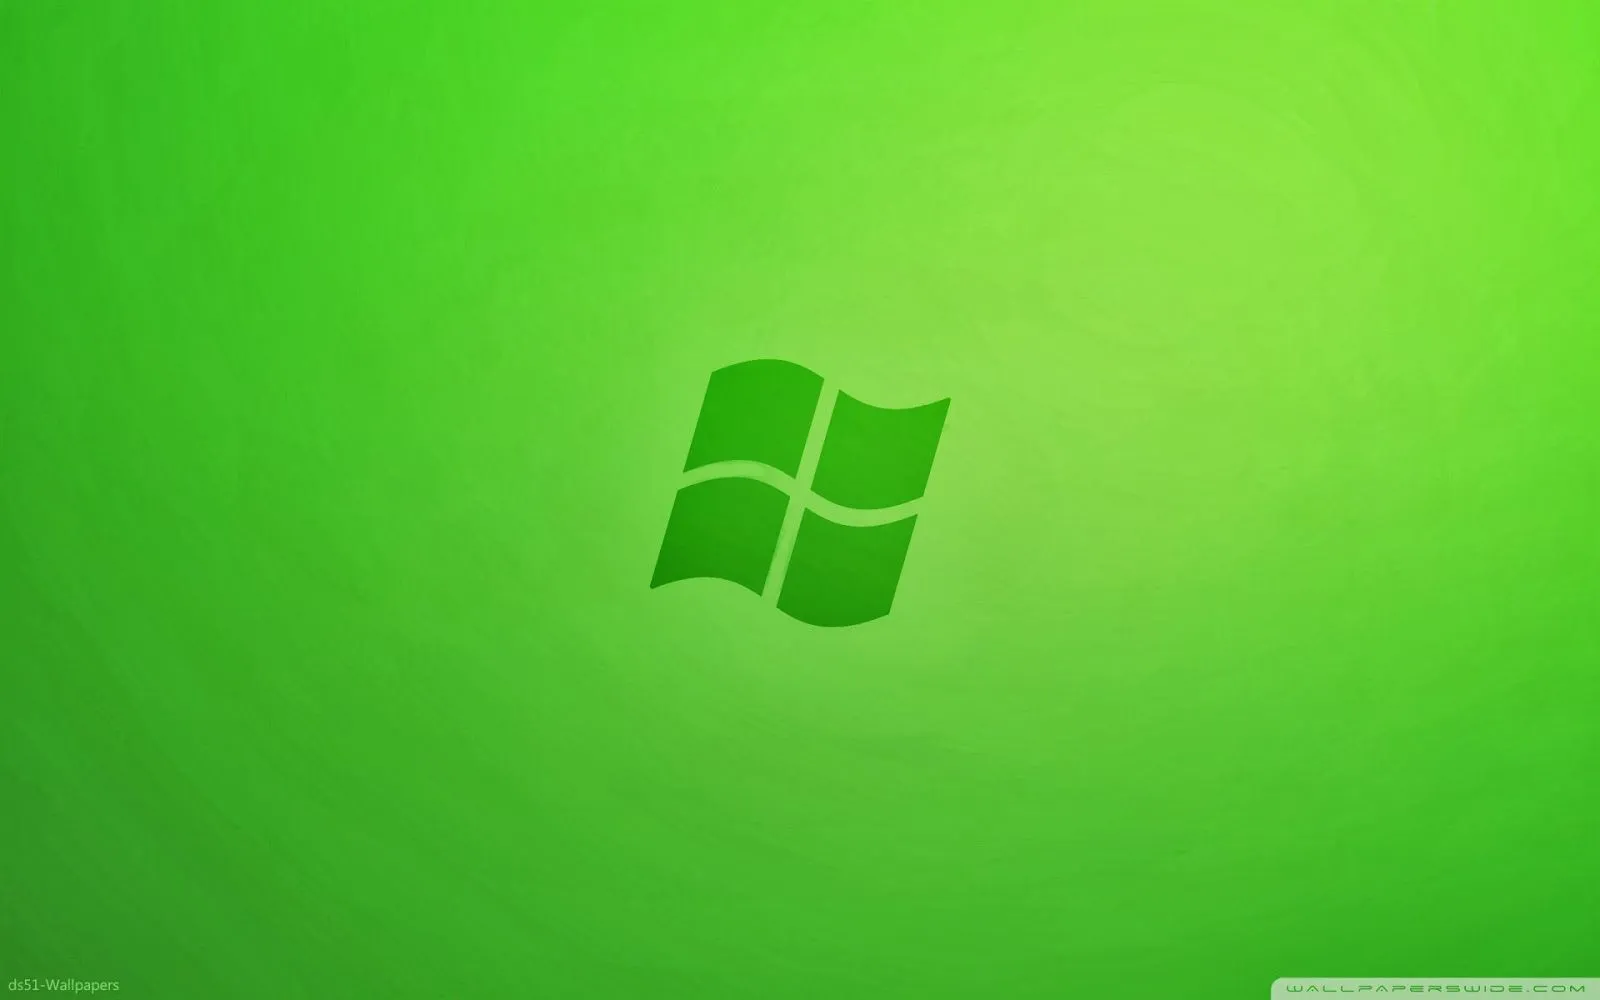 Imágenes Hilandy: Fondo de Pantalla Windows 7 textura verde